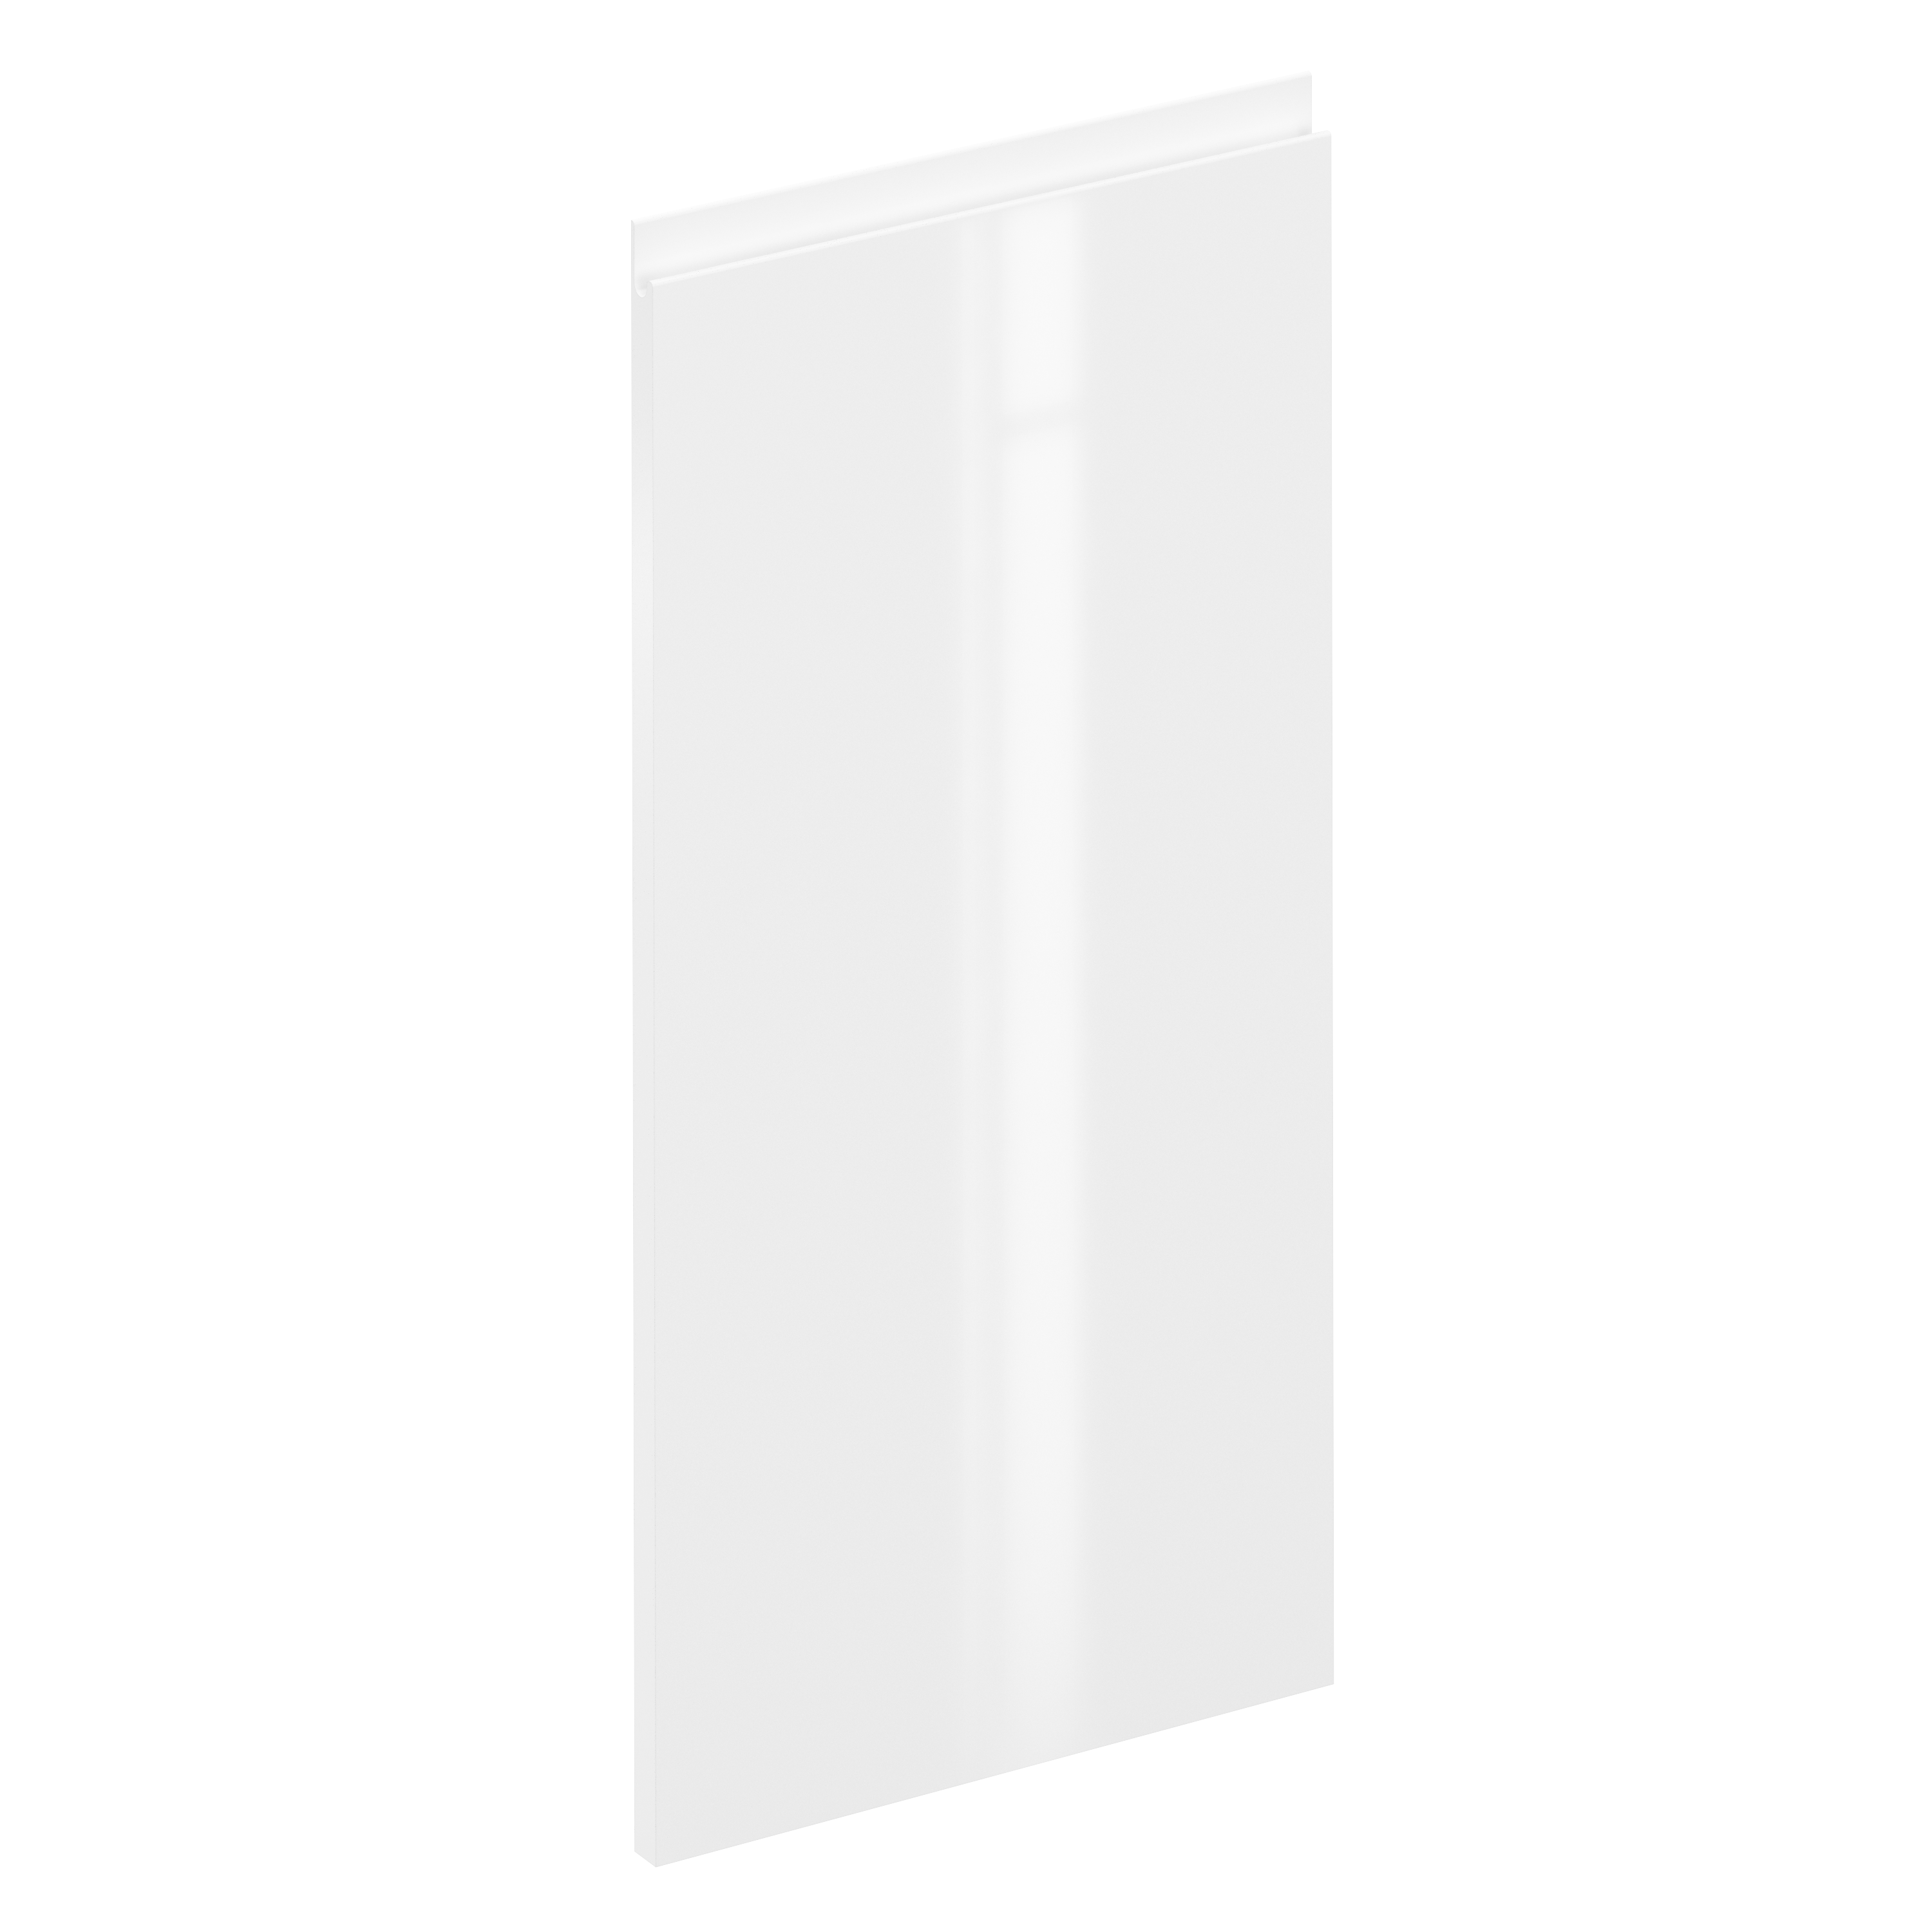 Puerta de cocina angular bajo tokyo blanc brillo 36,5x76,5cm